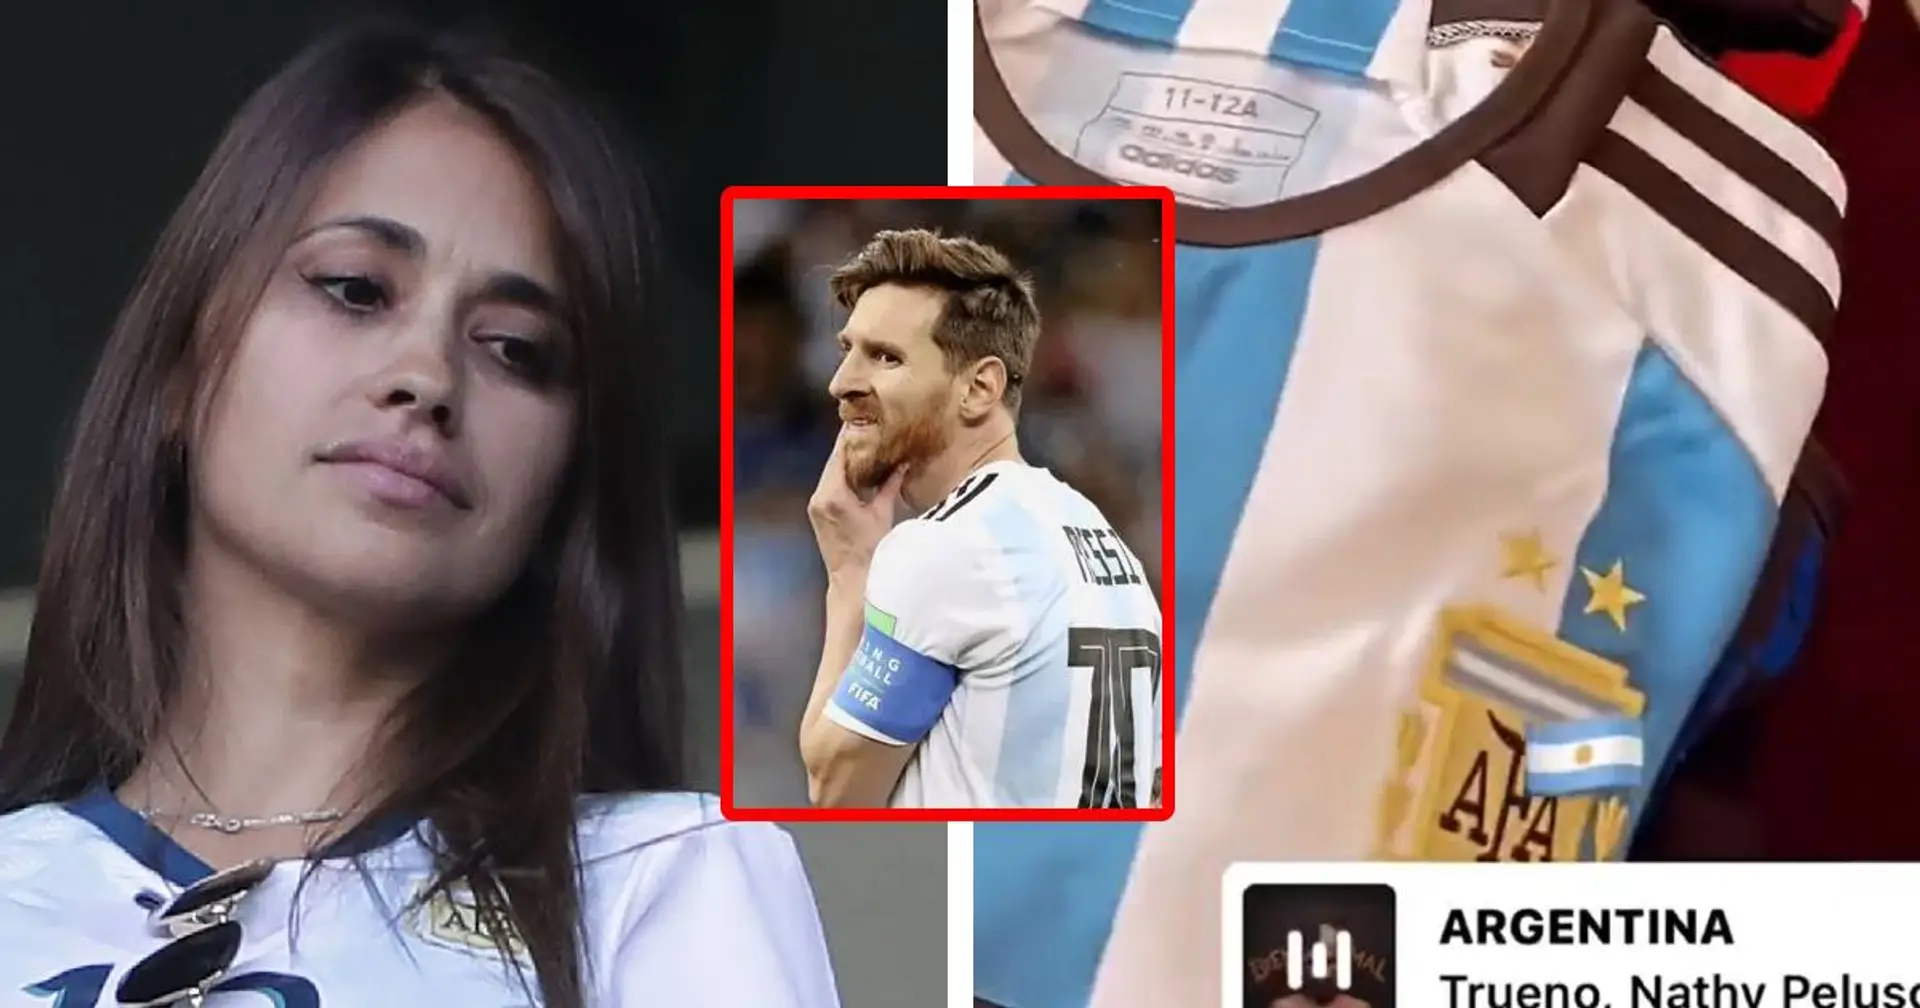 Aperçu : La femme de Messi prépare ses valises pour le Qatar alors que la liste argentine n'est toujours pas officielle